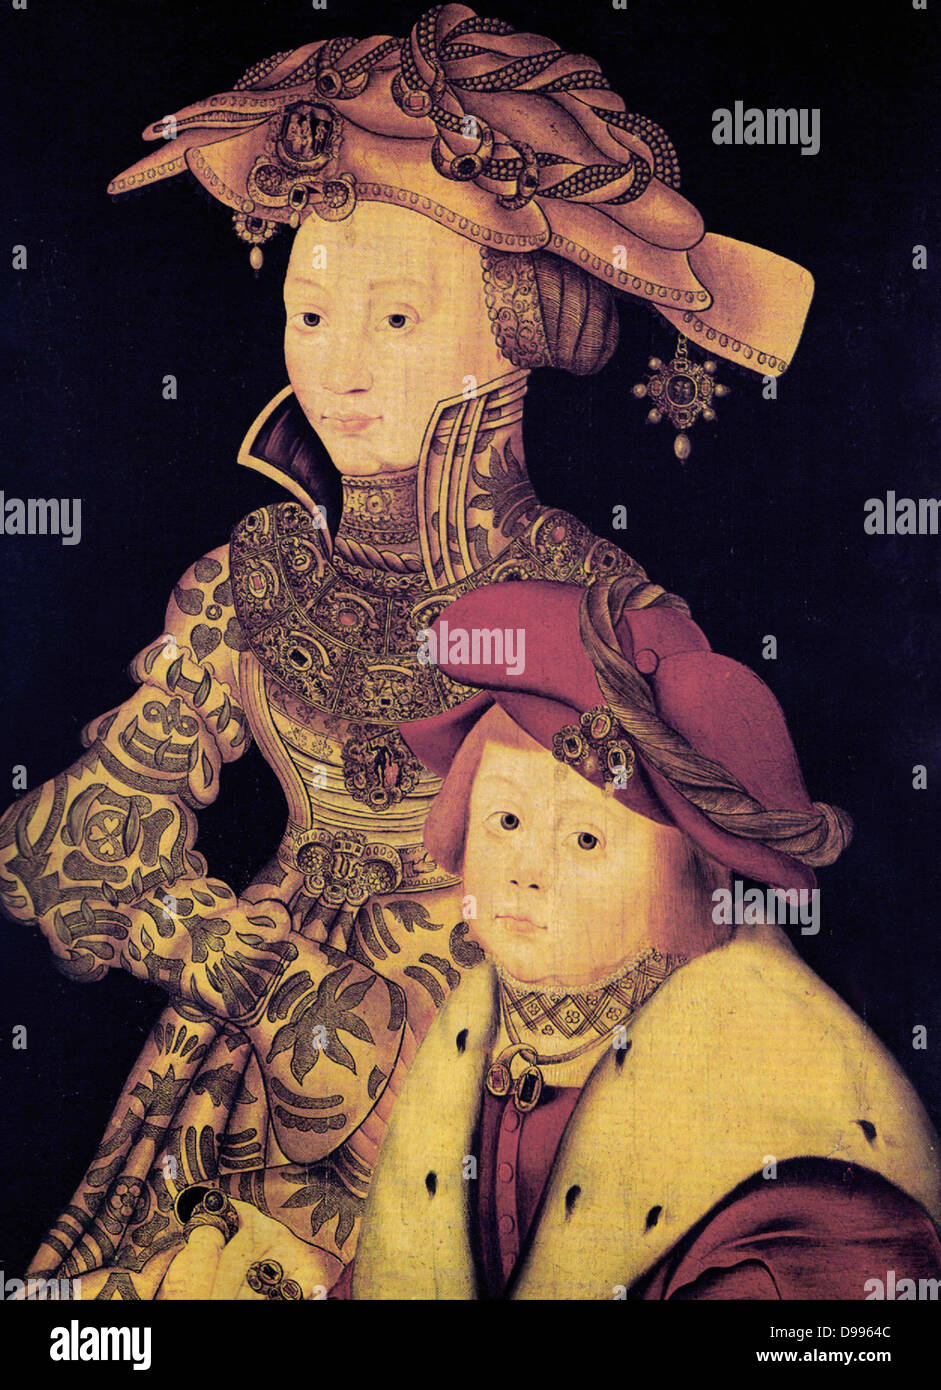 Joanna (1479 - l 1555) reine de Castille et reine d'Aragon, (Espagne). Elle a été surnommée Jeanne la Folle (espagnol : "Juana la Loca",). Joanna a été le dernier monarque de la maison de Trastámara, Ibérique et son mariage avec Philippe de Bourgogne (Philippe le Bel) a lancé la règle des Habsbourg en Espagne. Banque D'Images